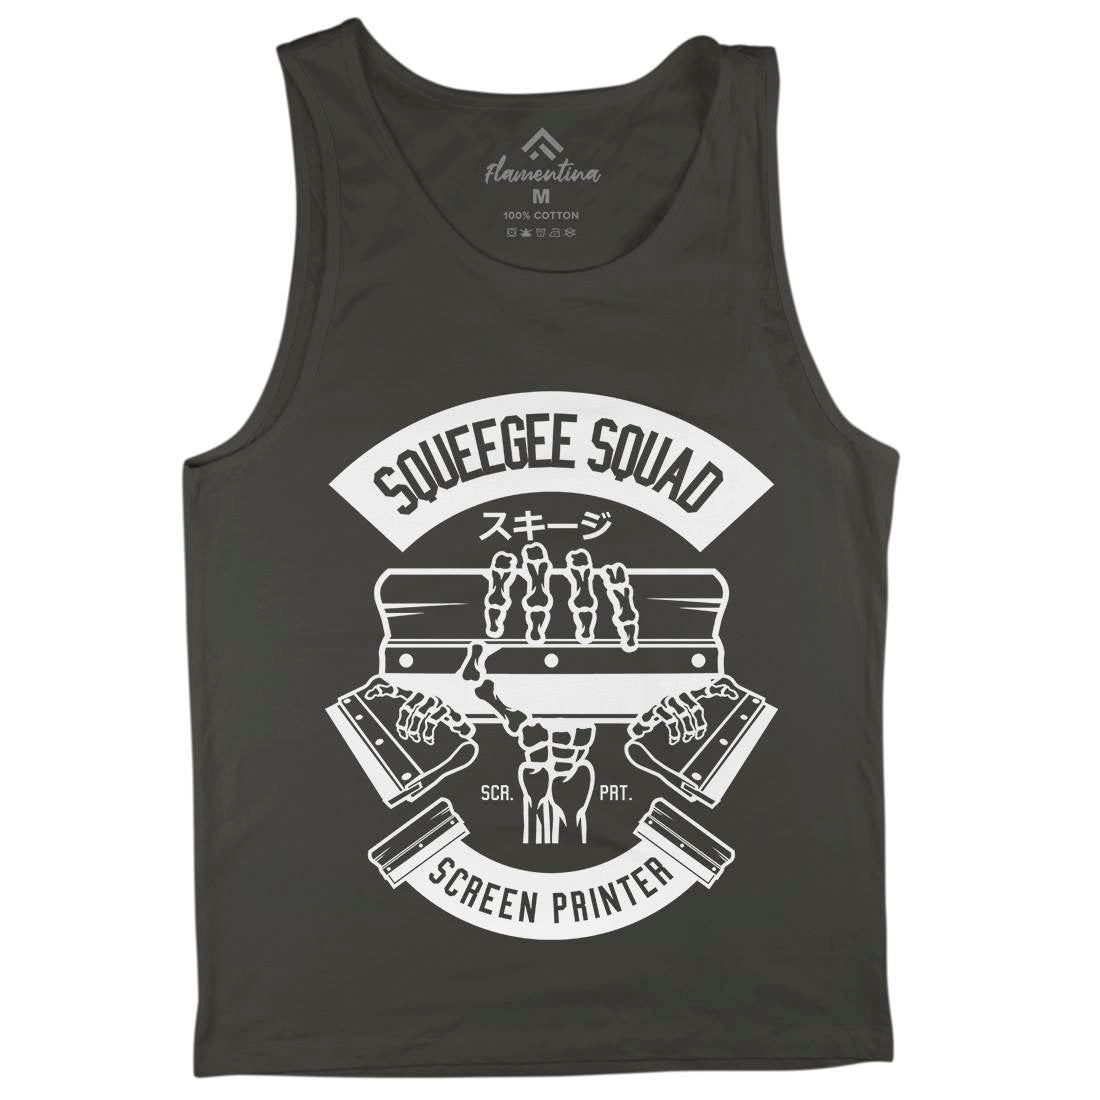 Squeegee Squad Mens Tank Top Vest Retro B642